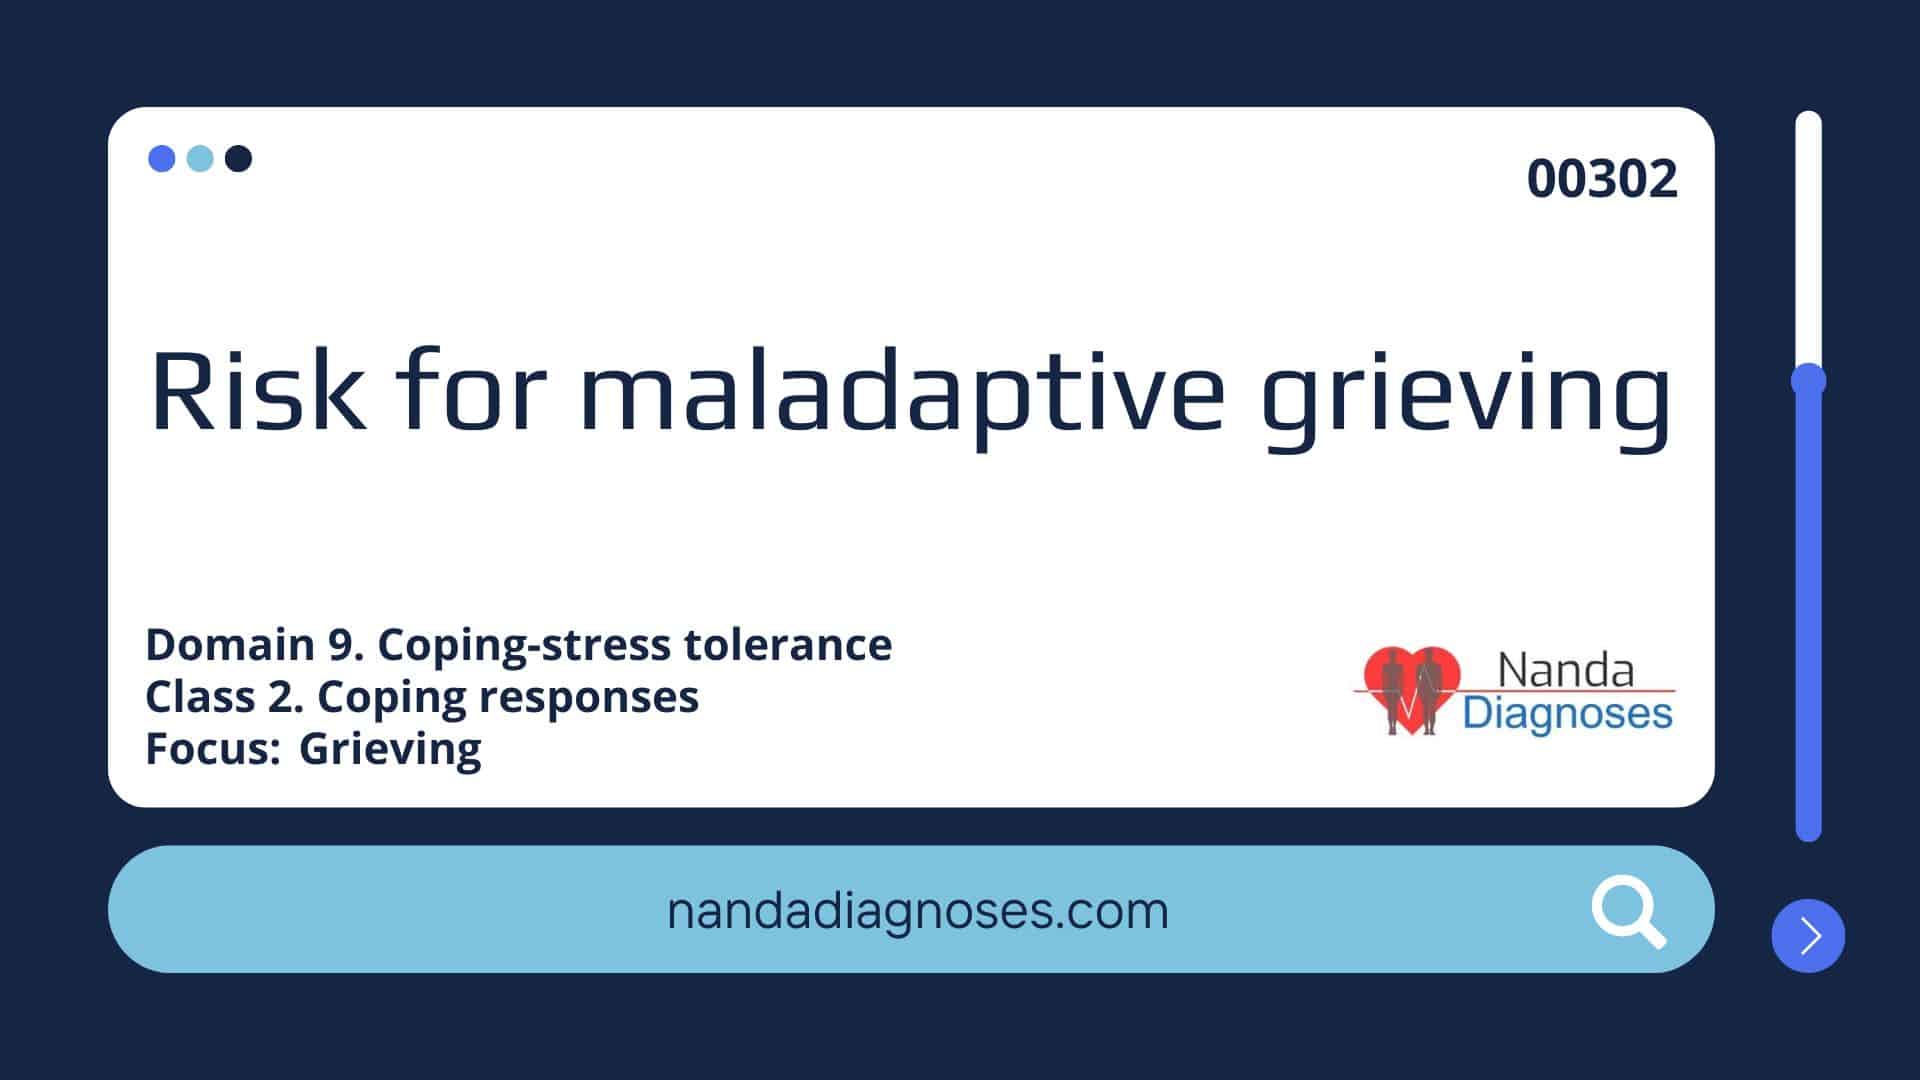 Nursing diagnosis Risk for maladaptive grieving